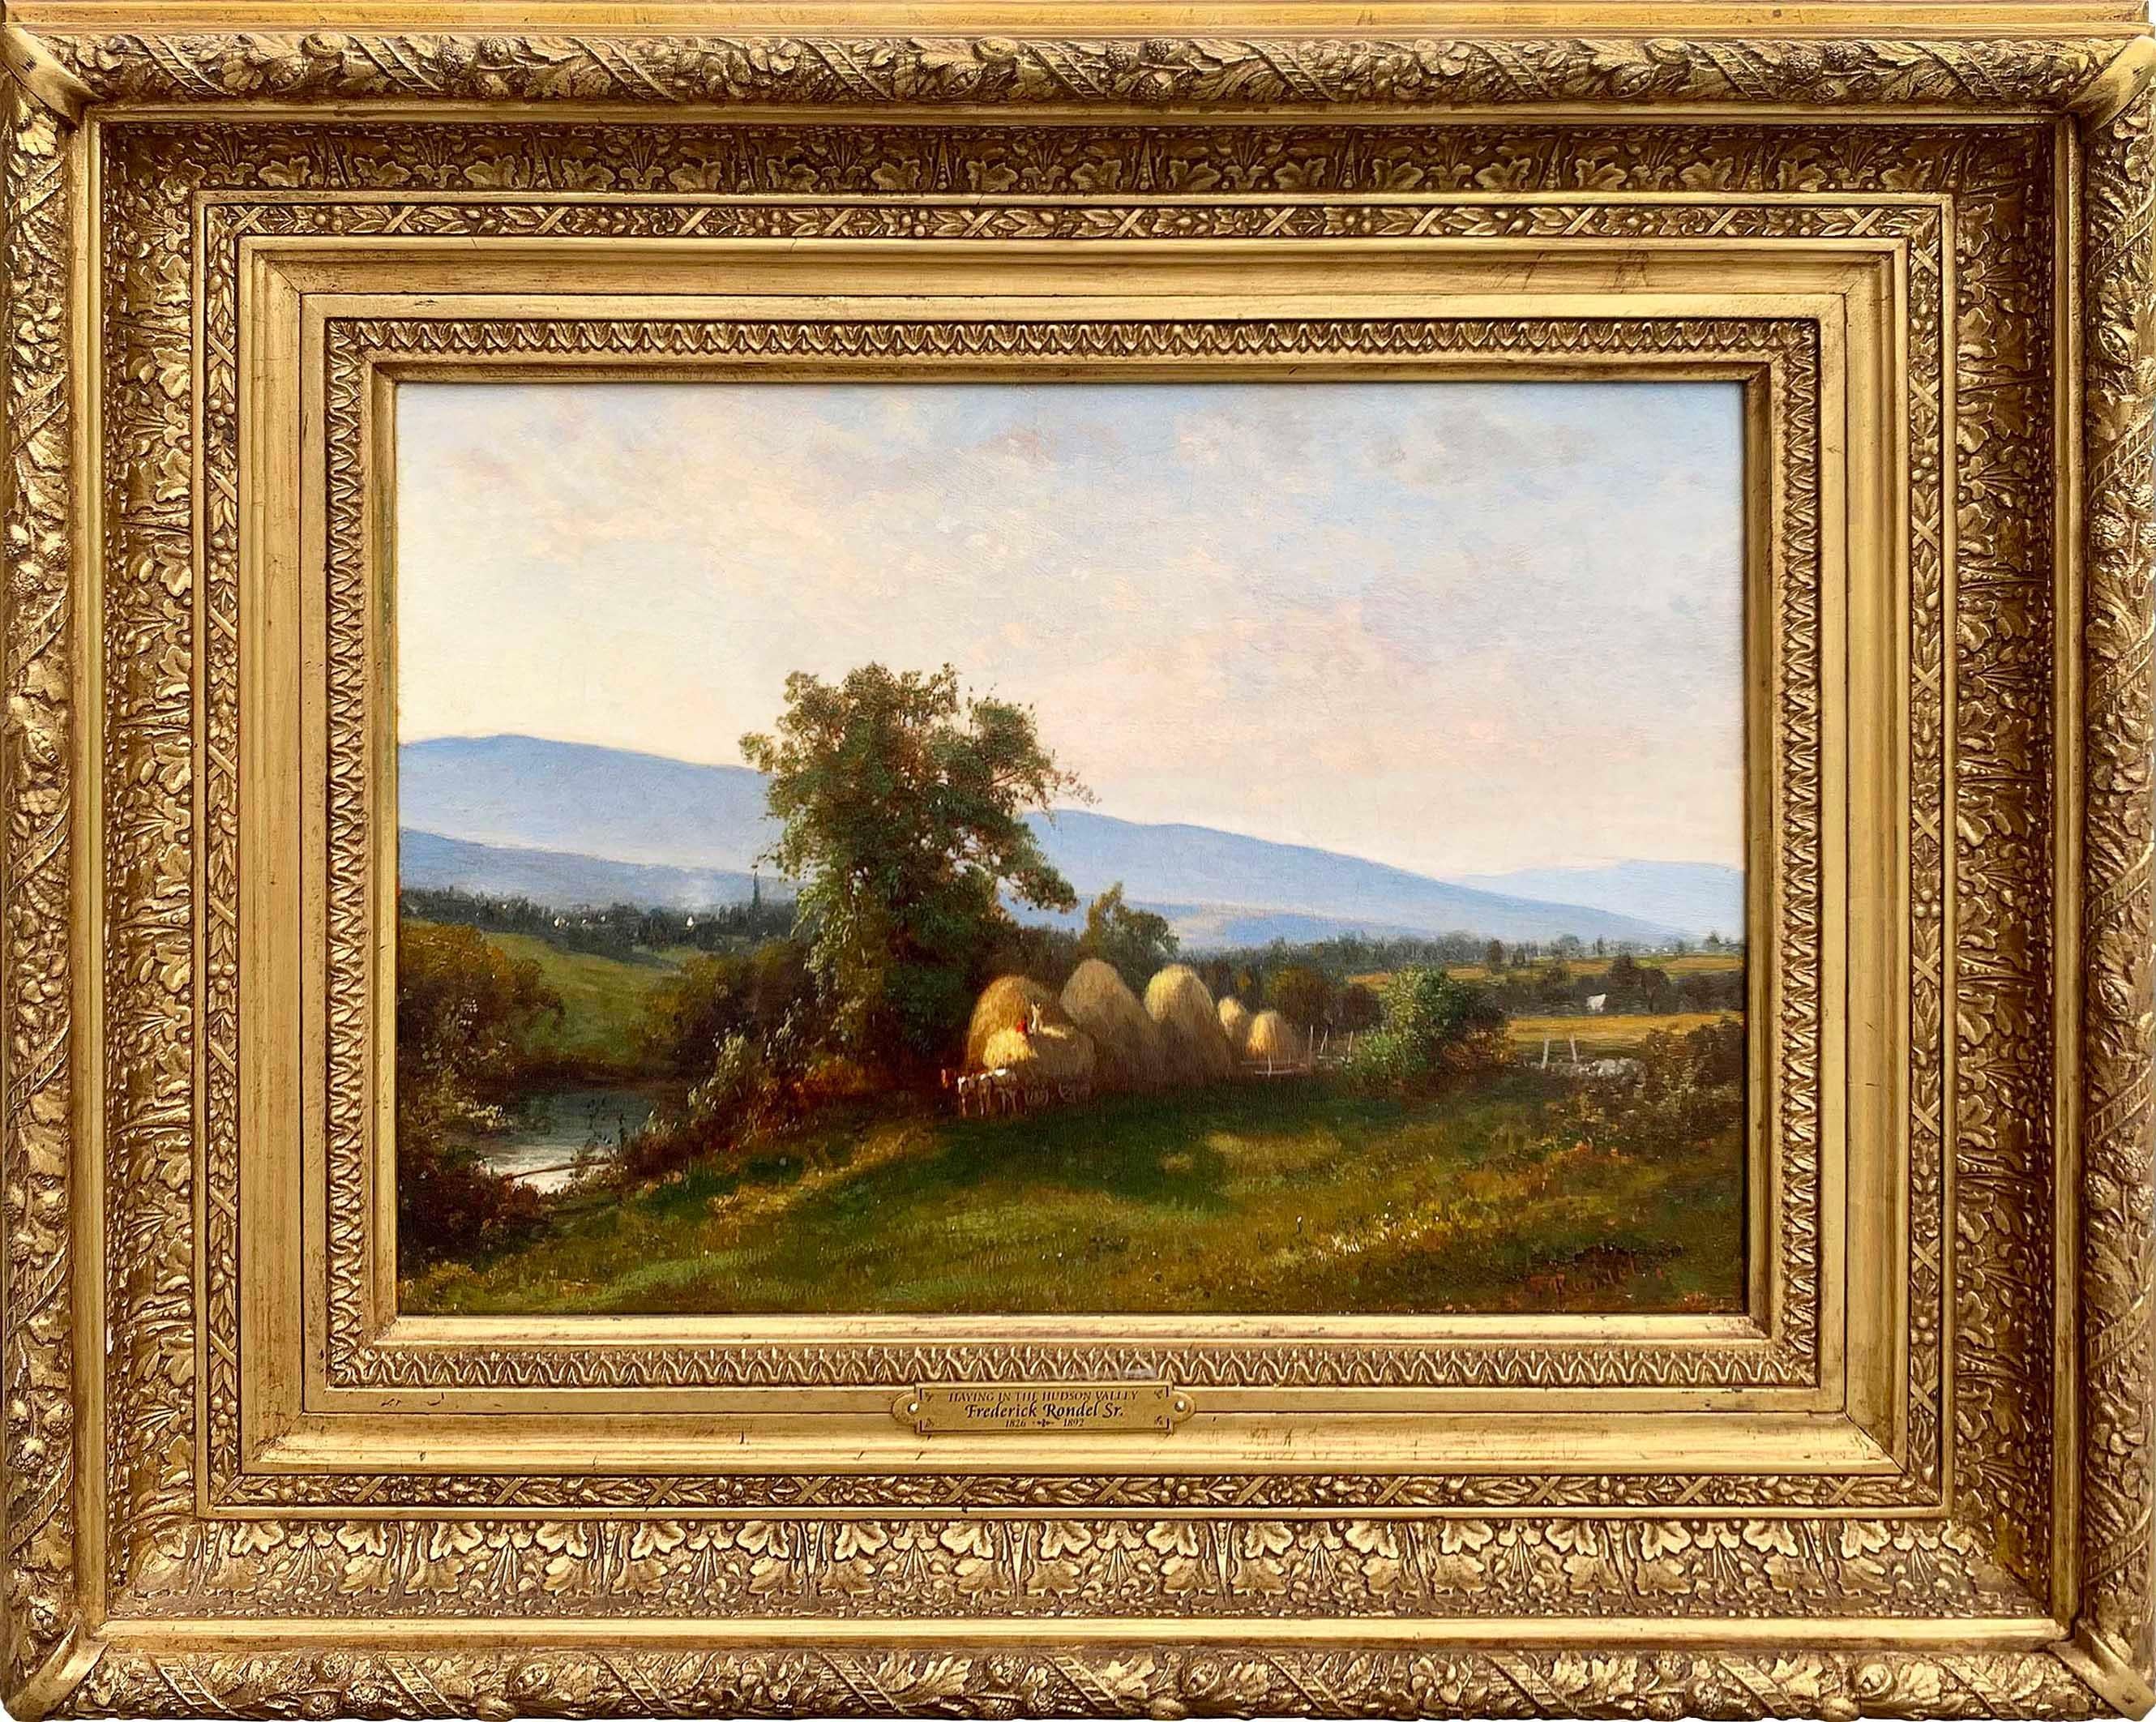 Peint par l'artiste de l'école de la rivière Hudson Frederick Rondel, Sr. (1826-1892), "Haying in the Hudson River Valley" est une huile sur toile, mesure 10,25 x 14 pouces, et est signé par Rondel en bas à droite. L'œuvre est encadrée dans un cadre